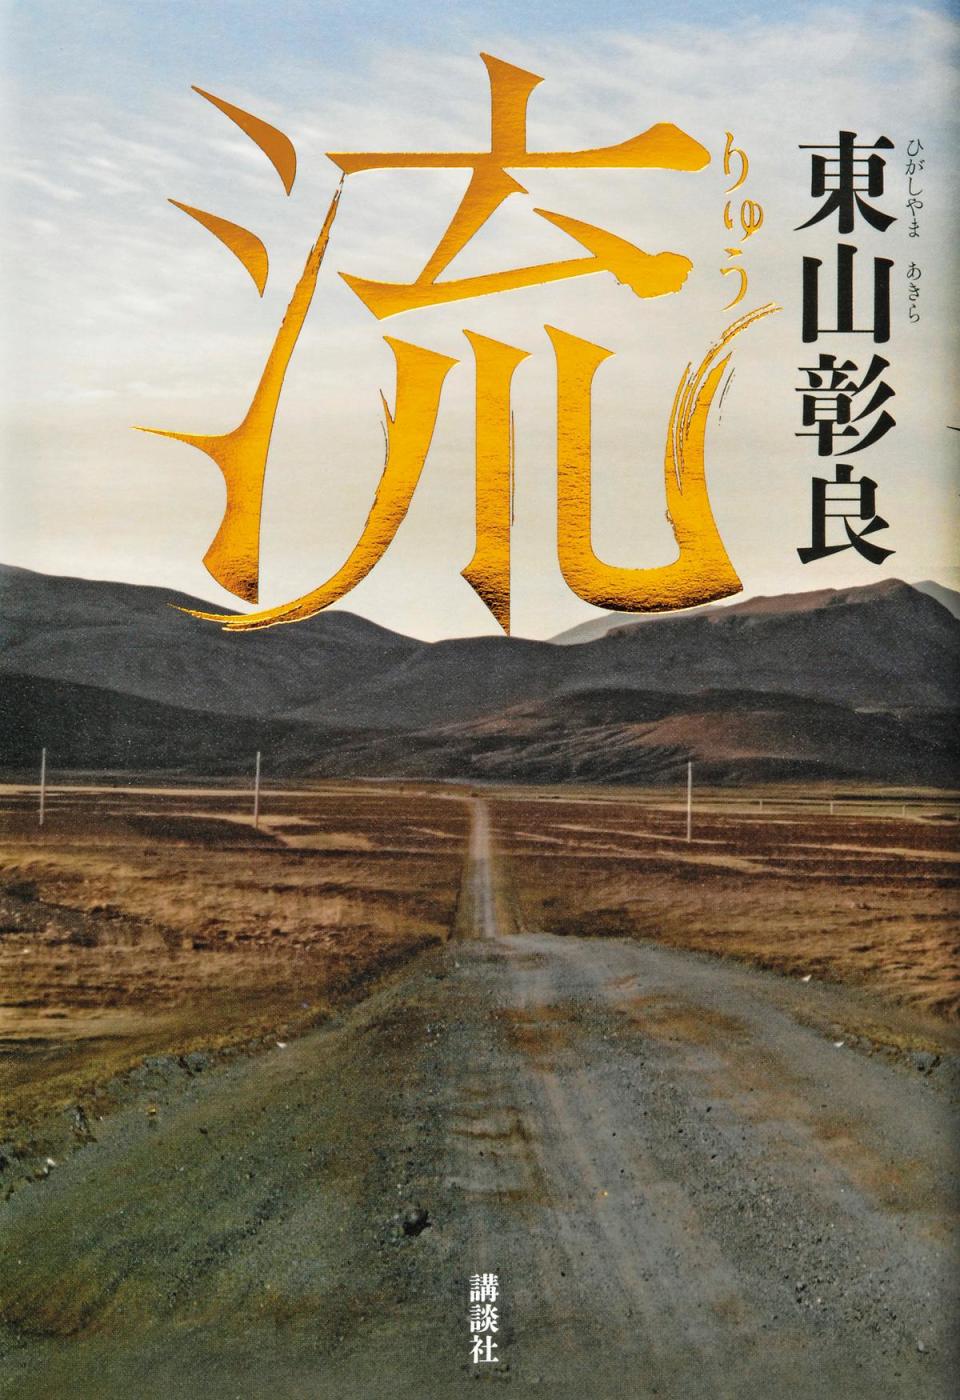 2015年，東山彰良以長篇自傳小說《流》榮獲直木賞，深受宮部美幸、東野圭吾等評審的大力肯定。（翻攝網路）